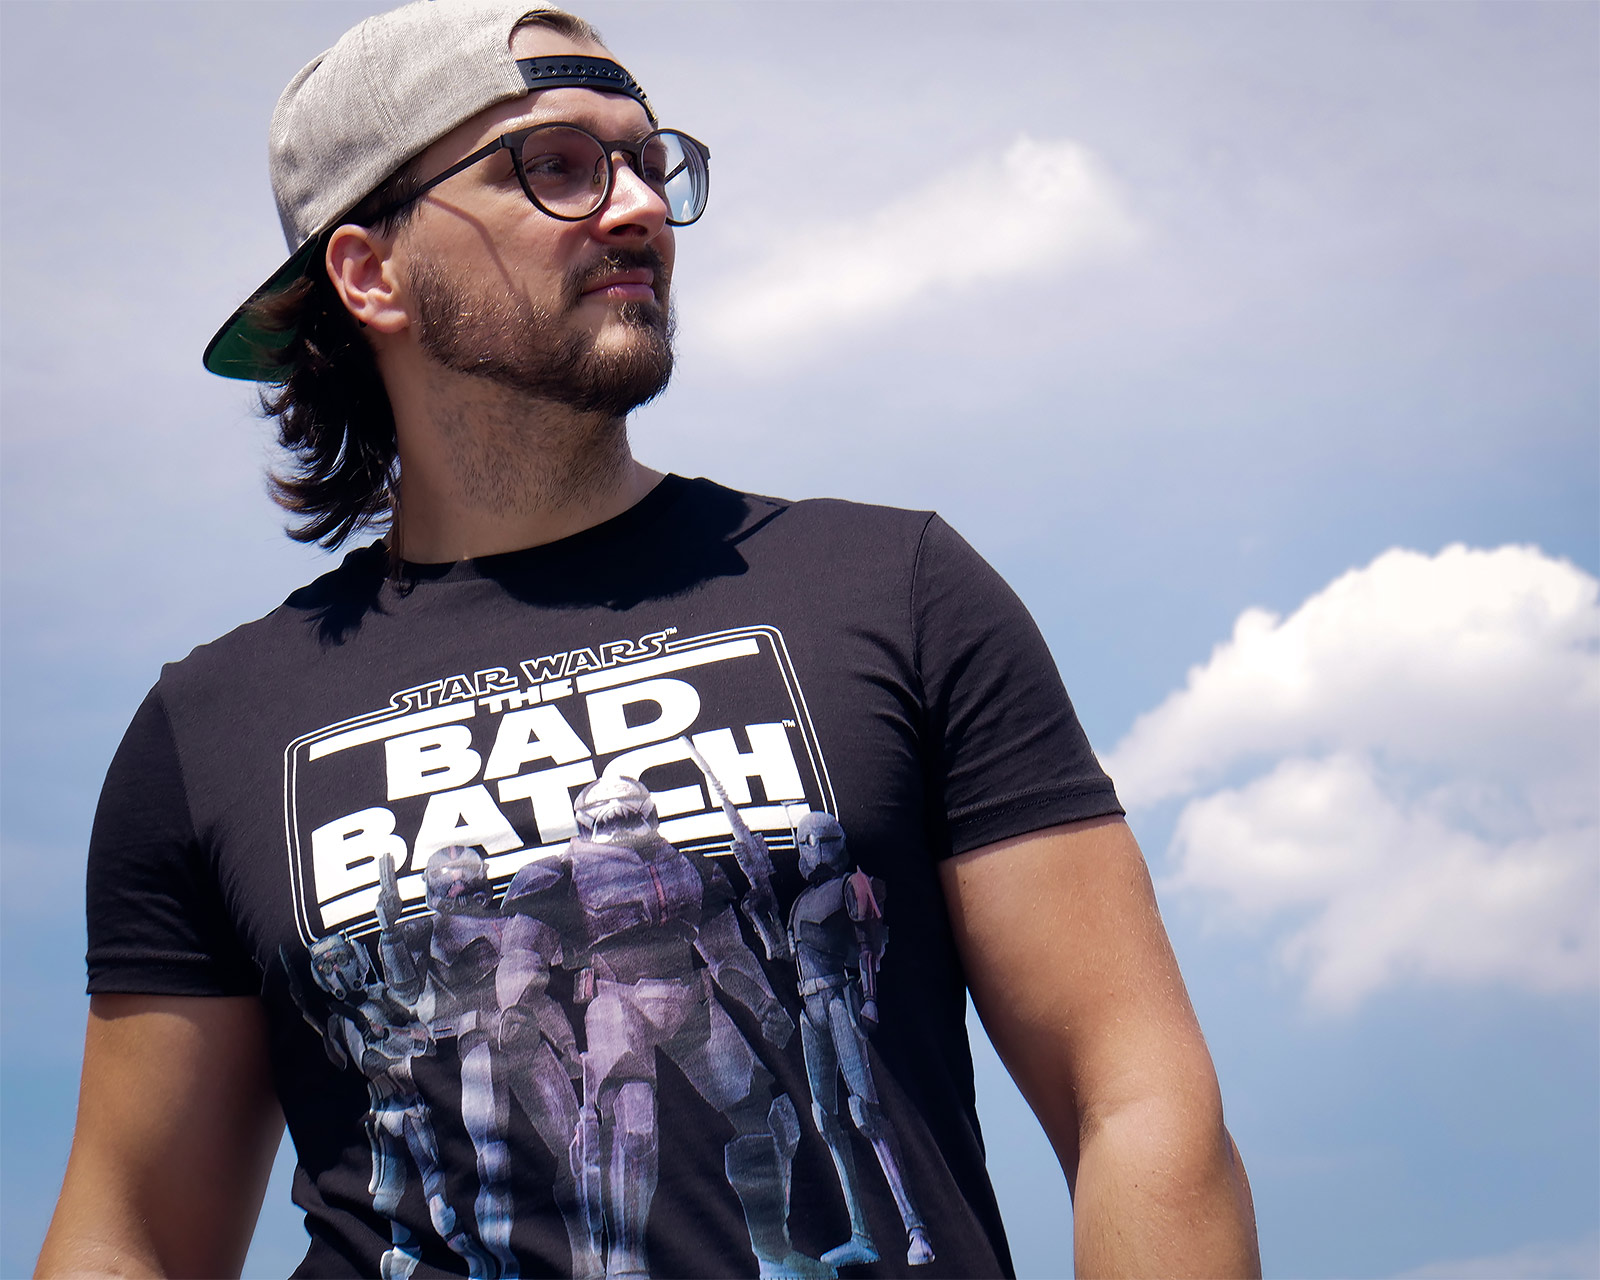 Star Wars - Bad Batch Group T-Shirt schwarz